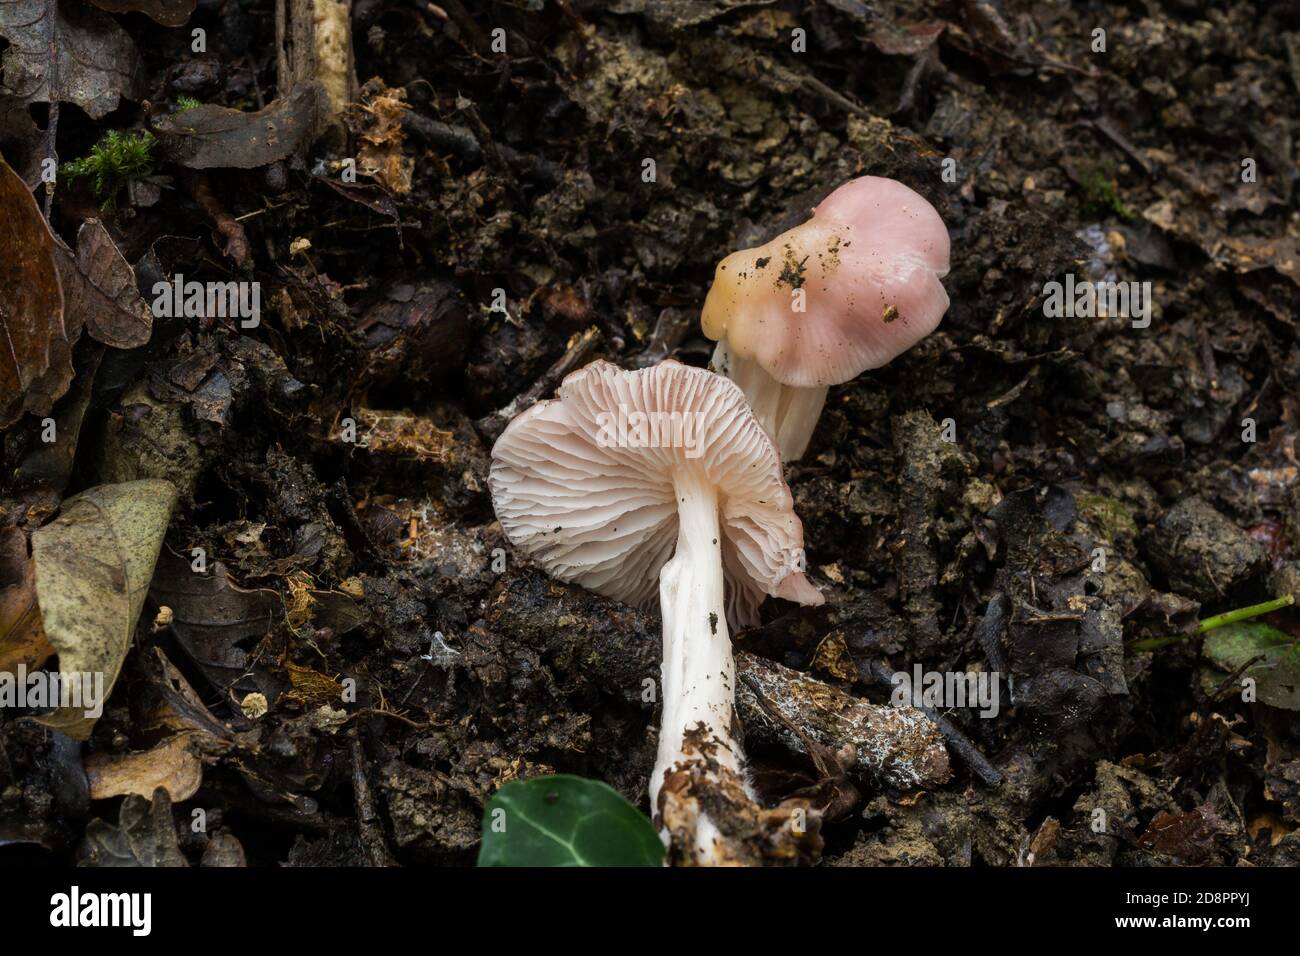 Die Kappe und der Stamm von dem, was möglicherweise ein junger "Sickner" oder der Russula emetica Pilz ist. Stockfoto